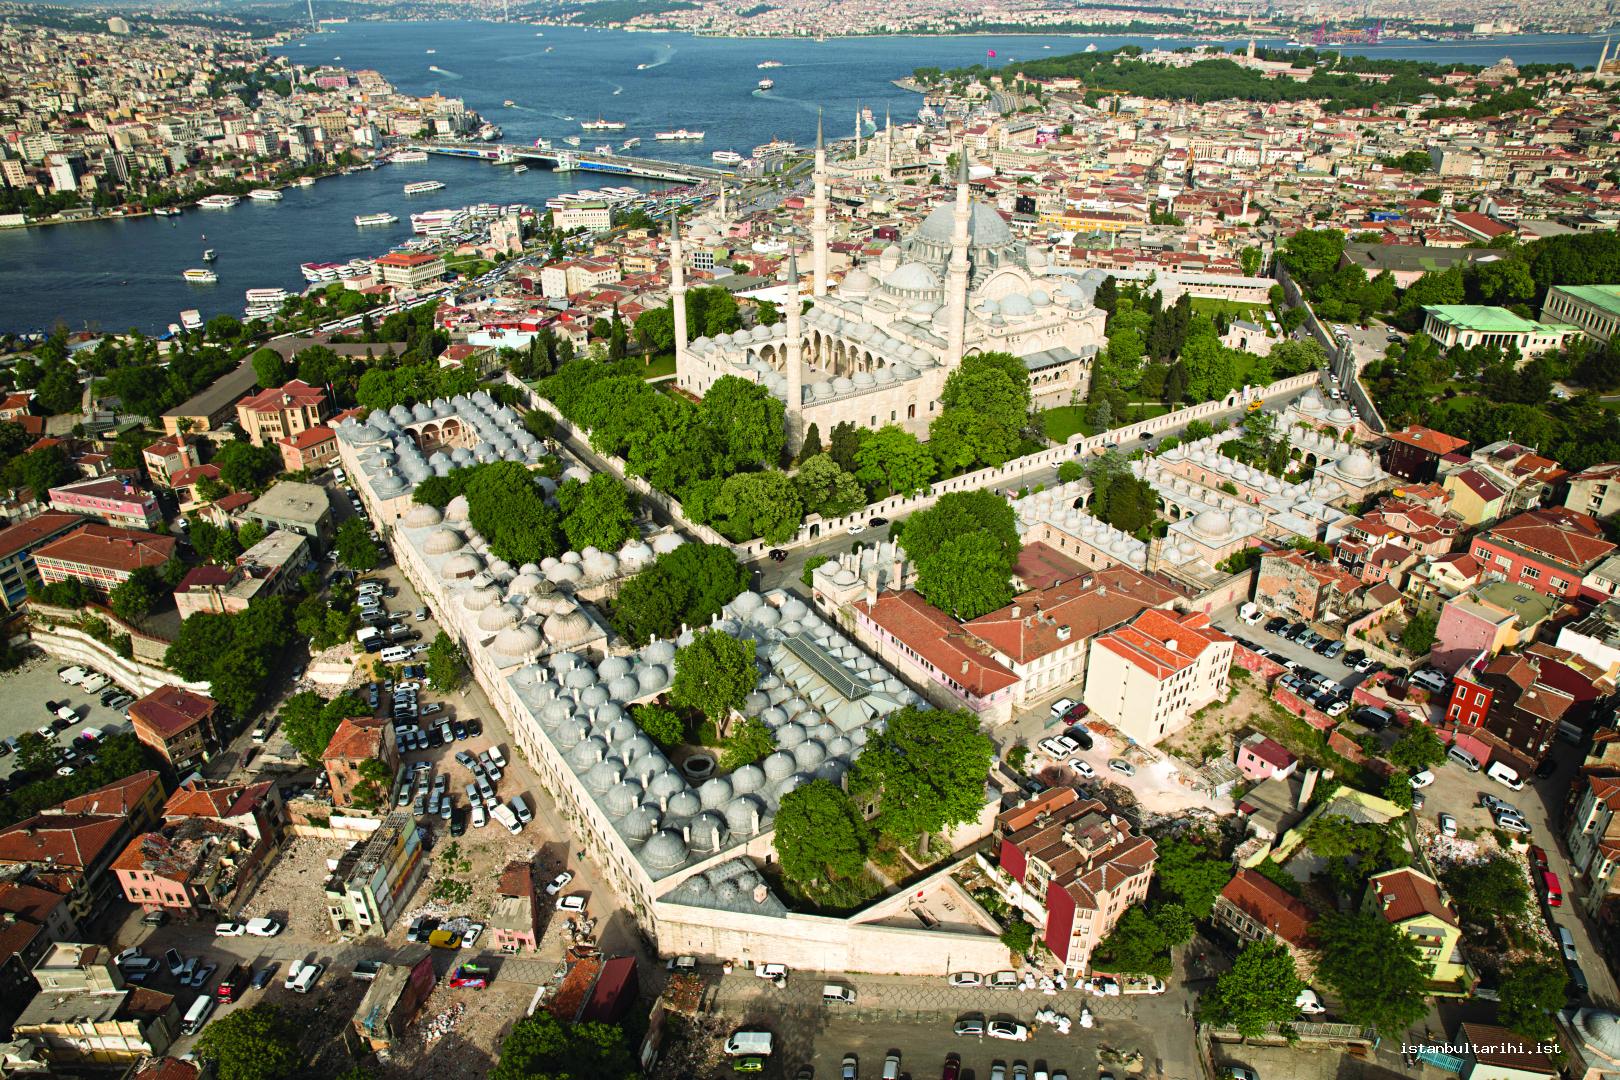 20- Süleymaniye Complex